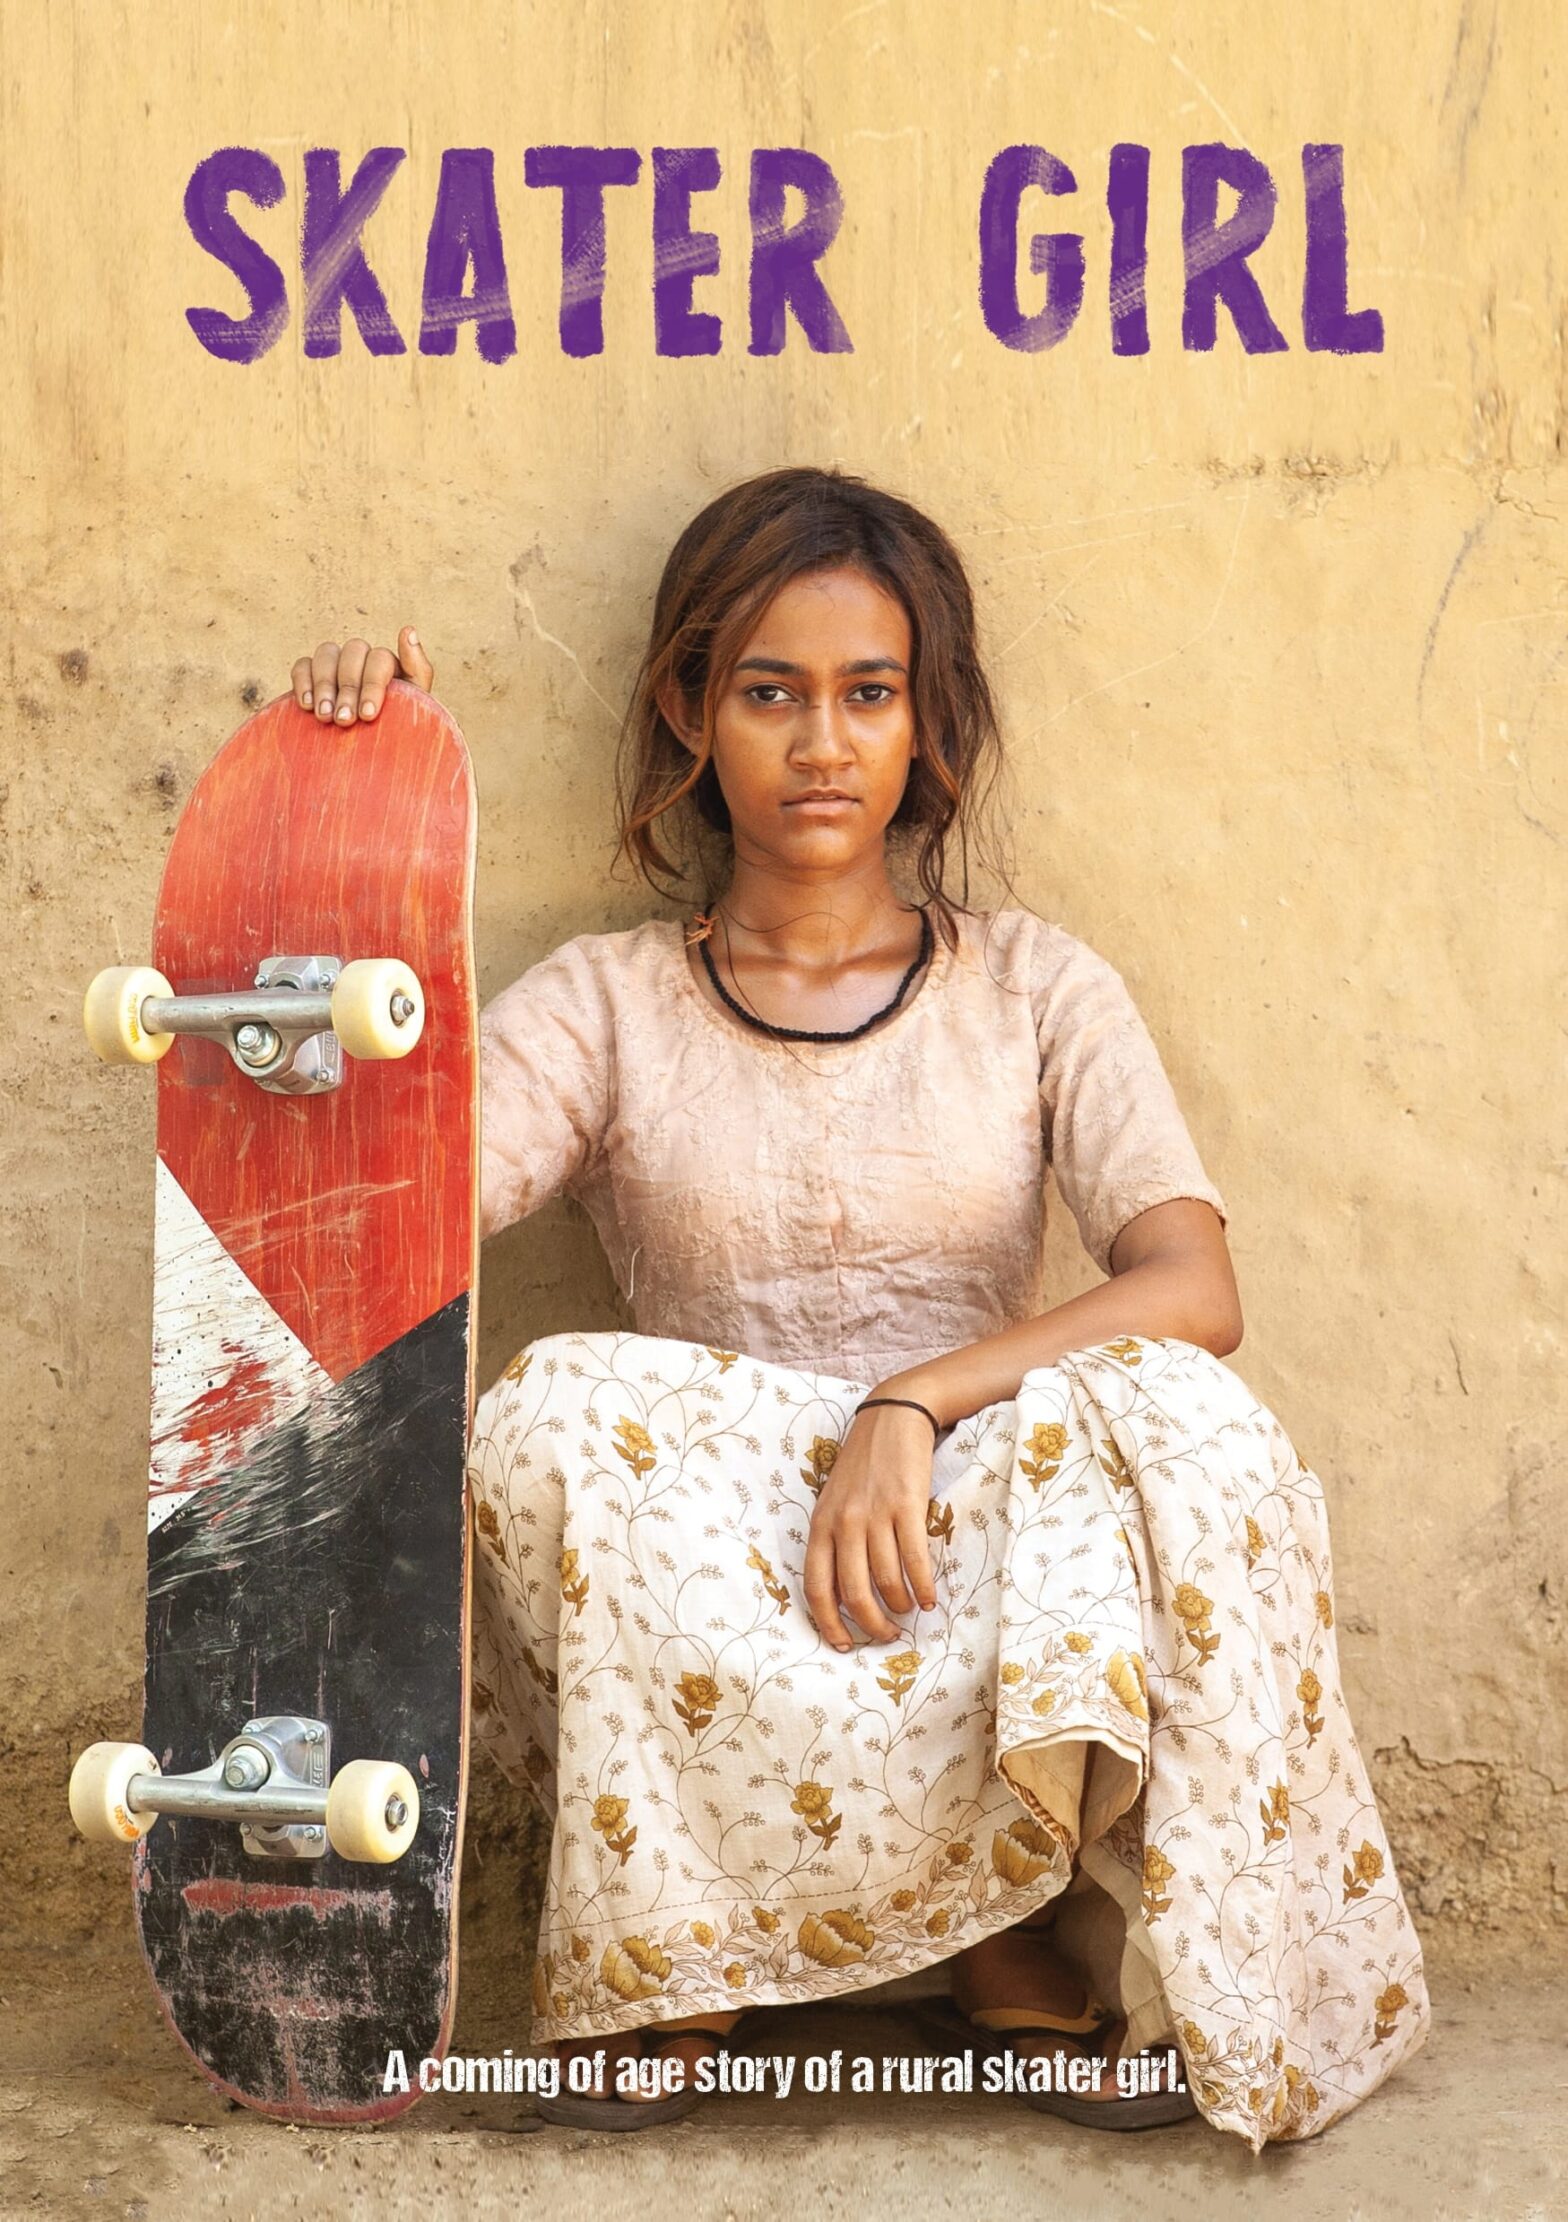 Poster for the movie "Skater Girl"